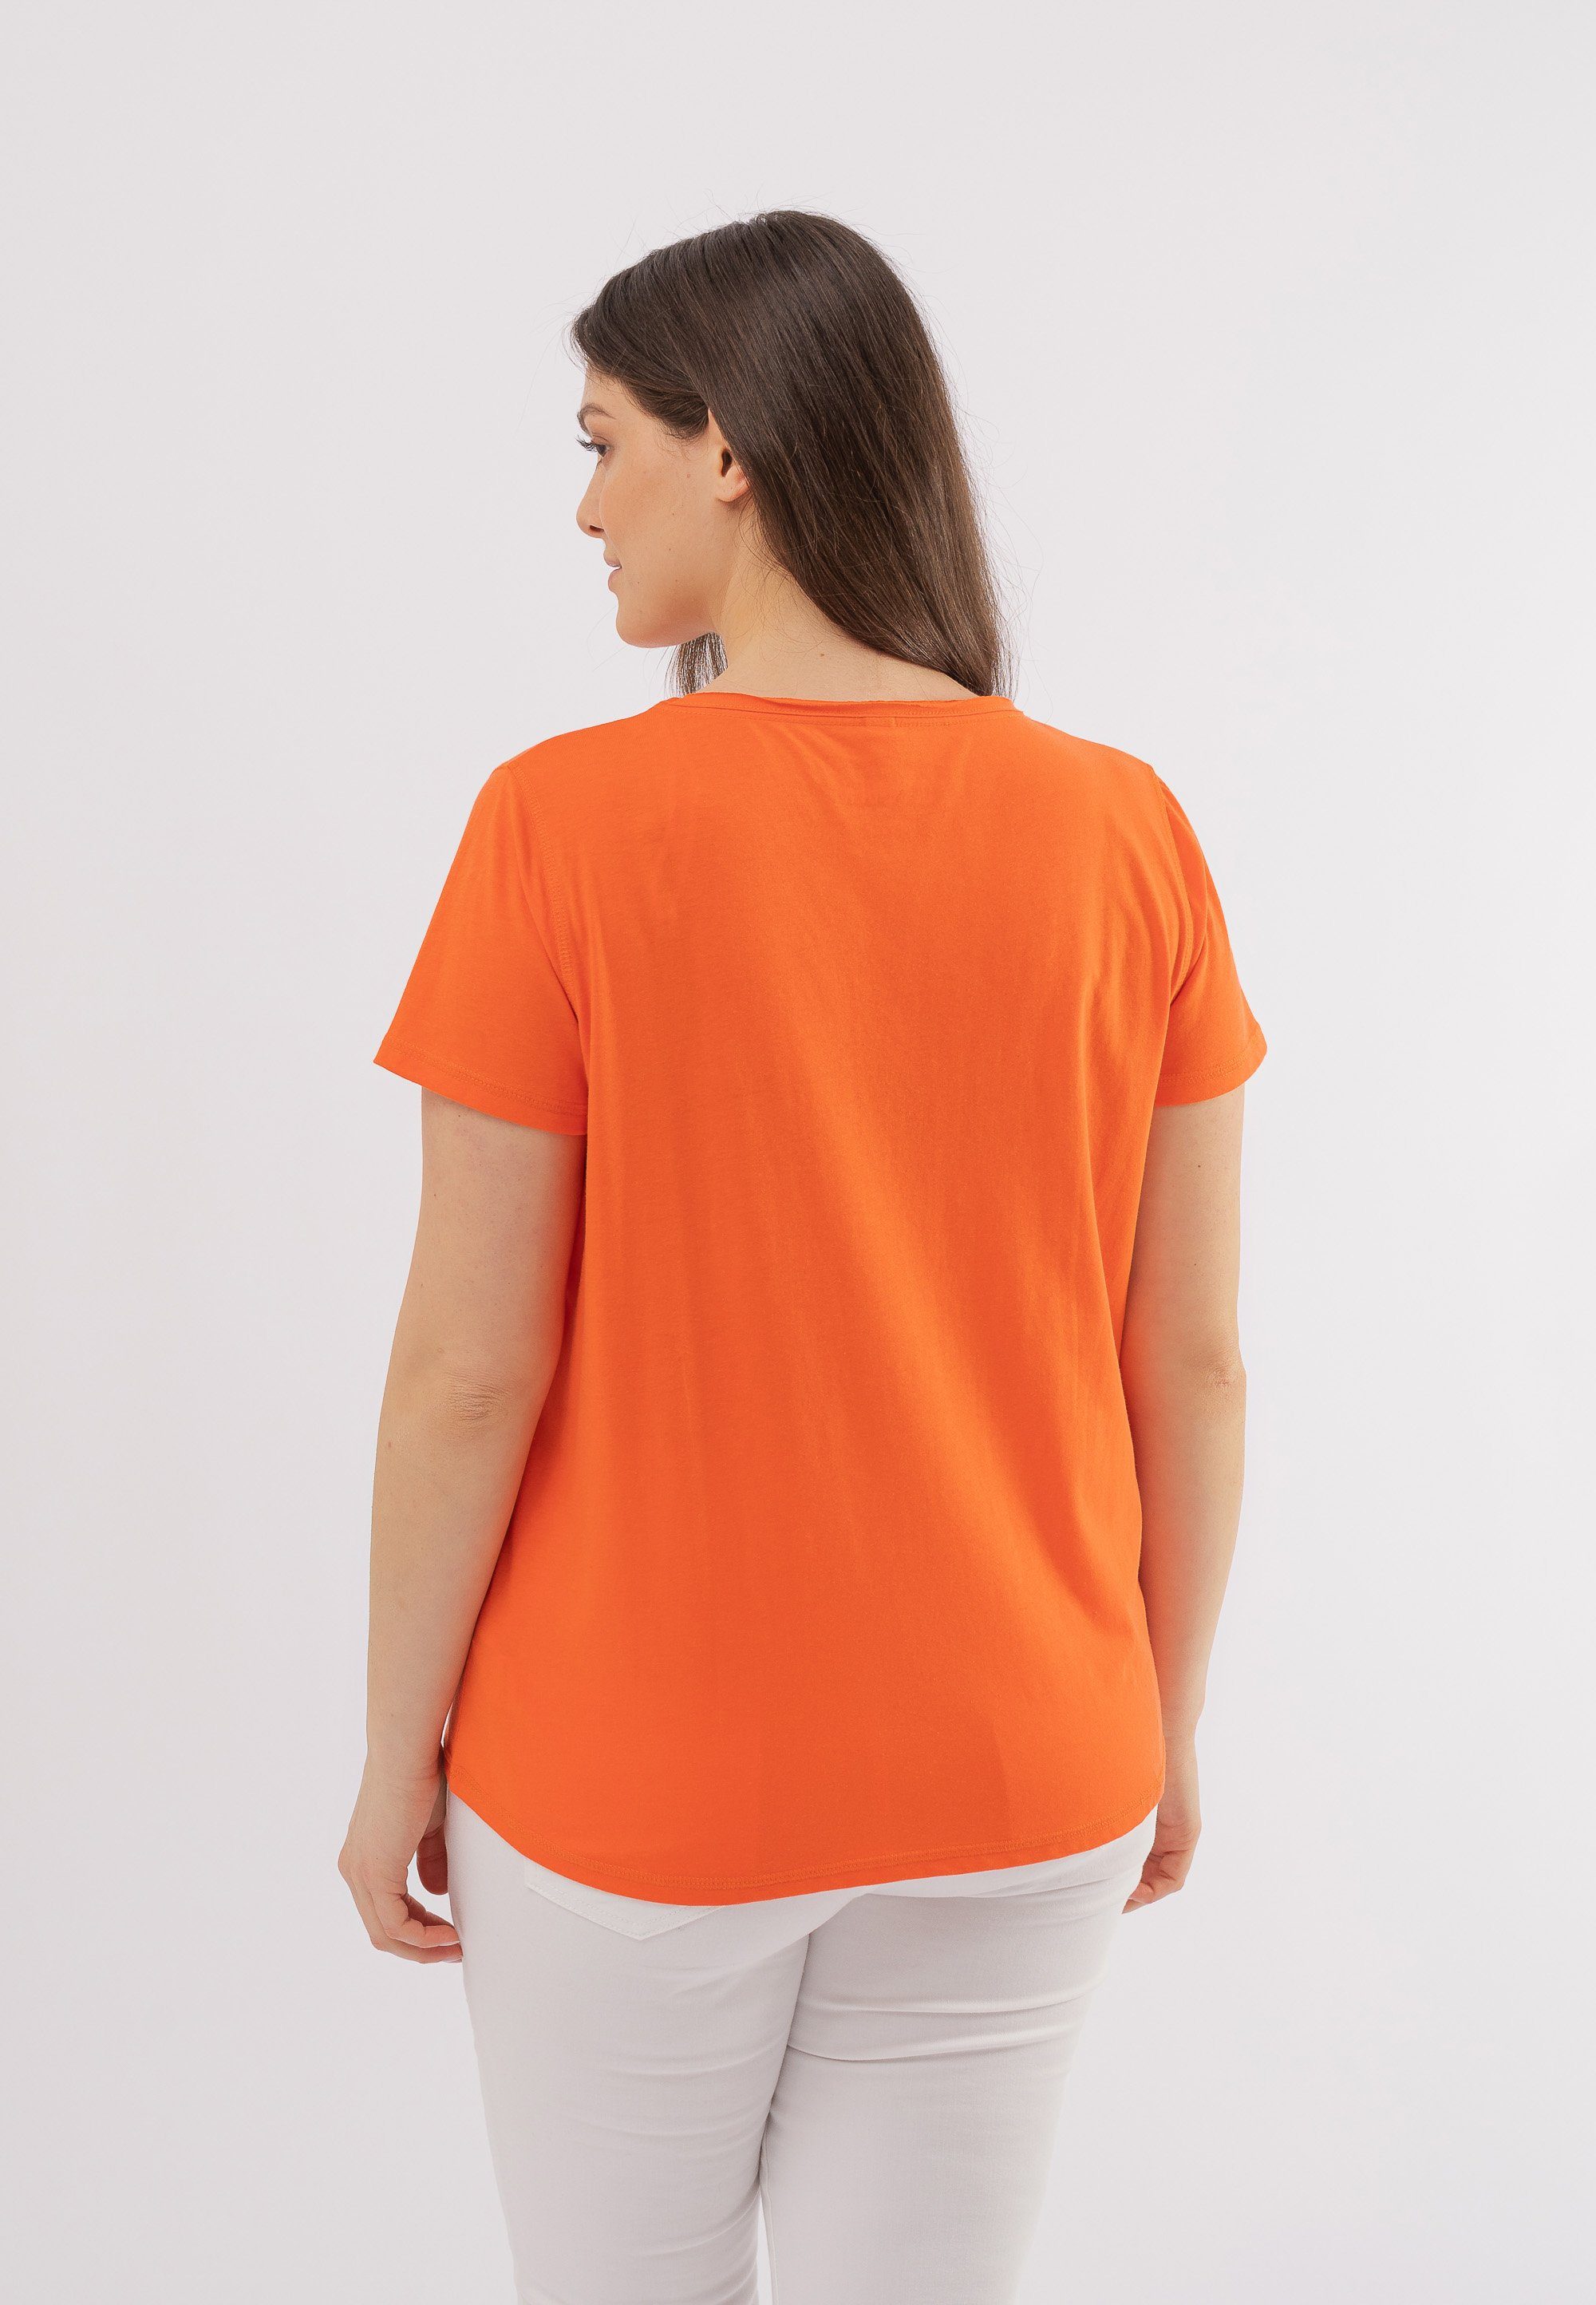 October T-Shirt orange Knöpfen dekorativen mit